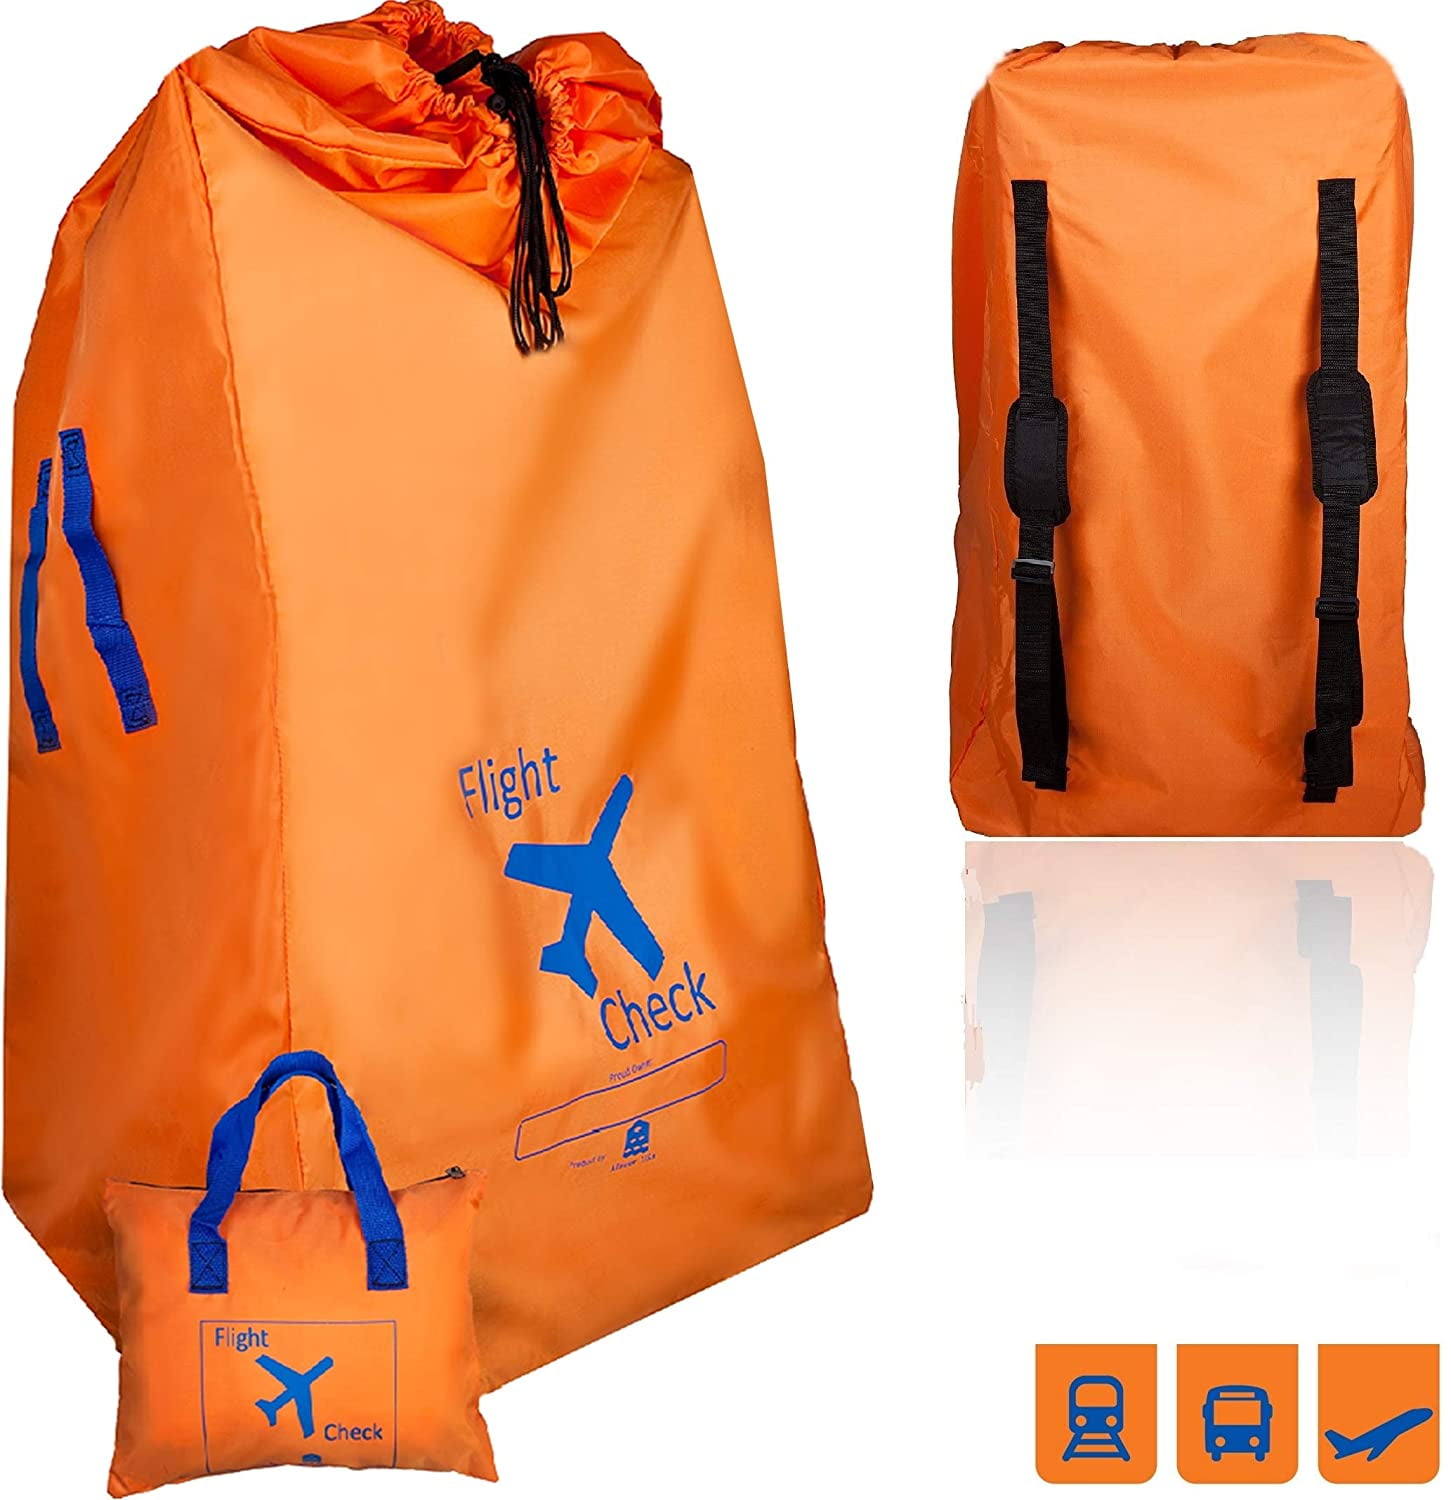 padded double stroller travel bag